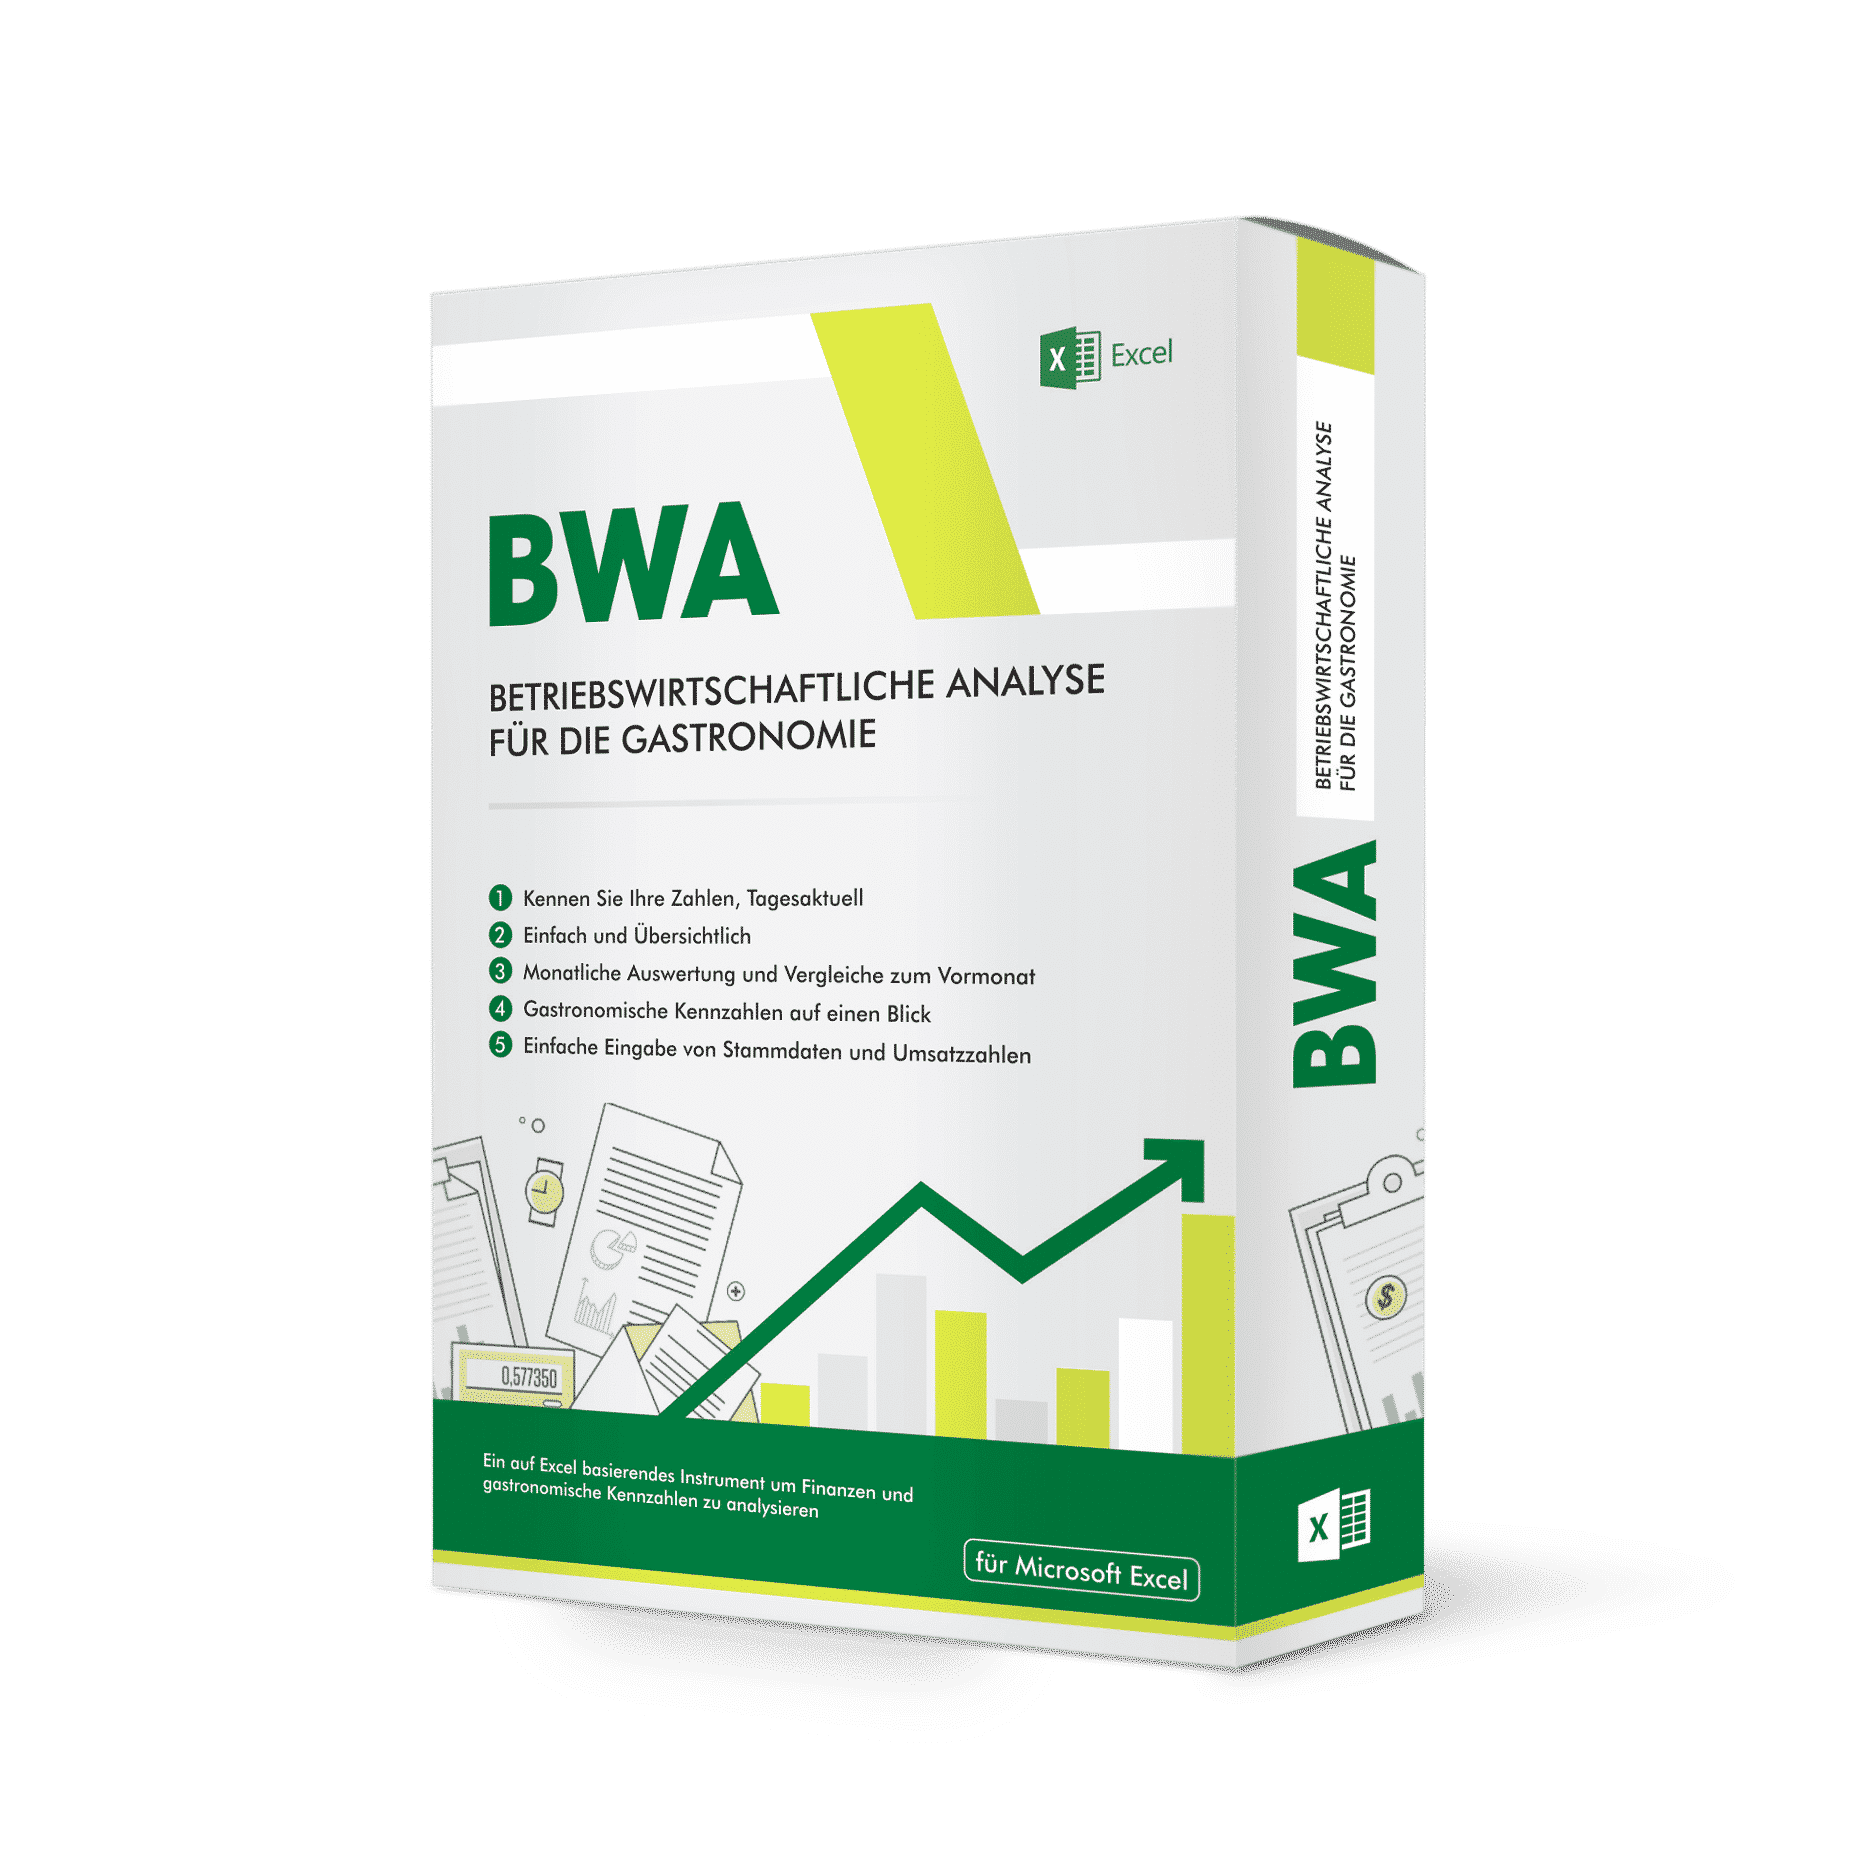 bwa-gastronomie-rechner-finanzrechner